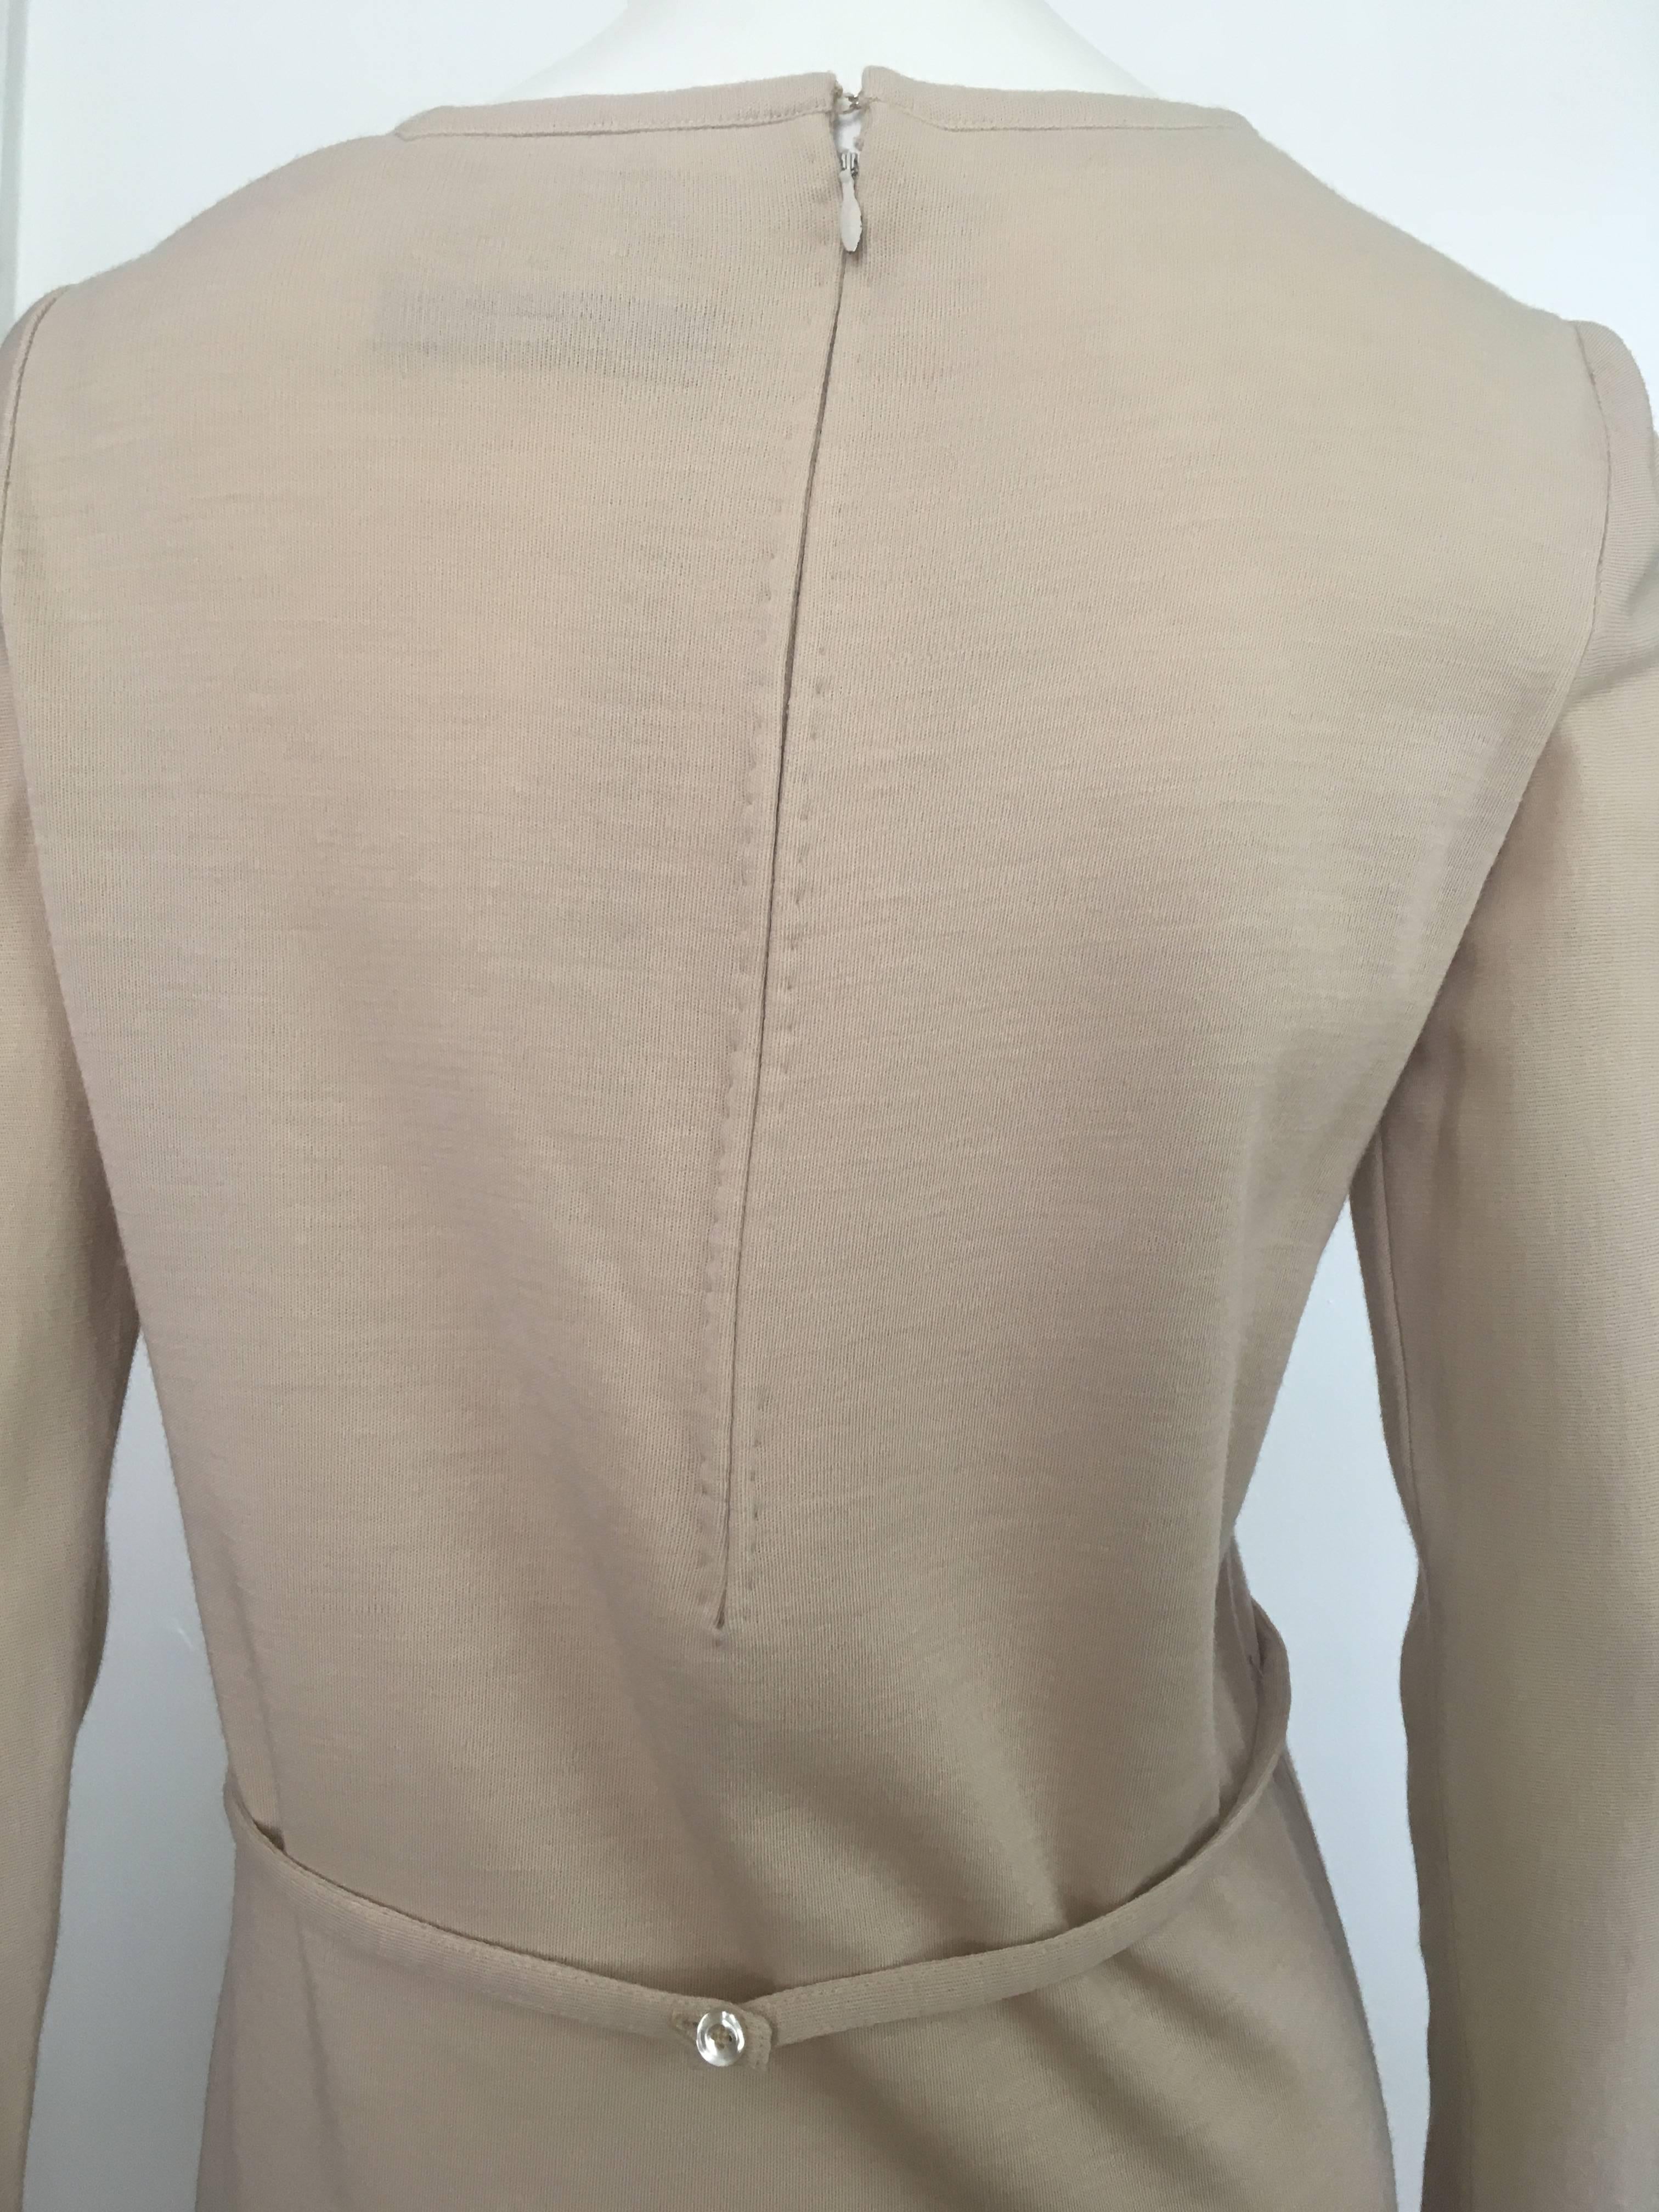 Geoffrey Beene Boutique 1970s Wool Knit Tan Long Sleeve Dress Size 8. For Sale 5